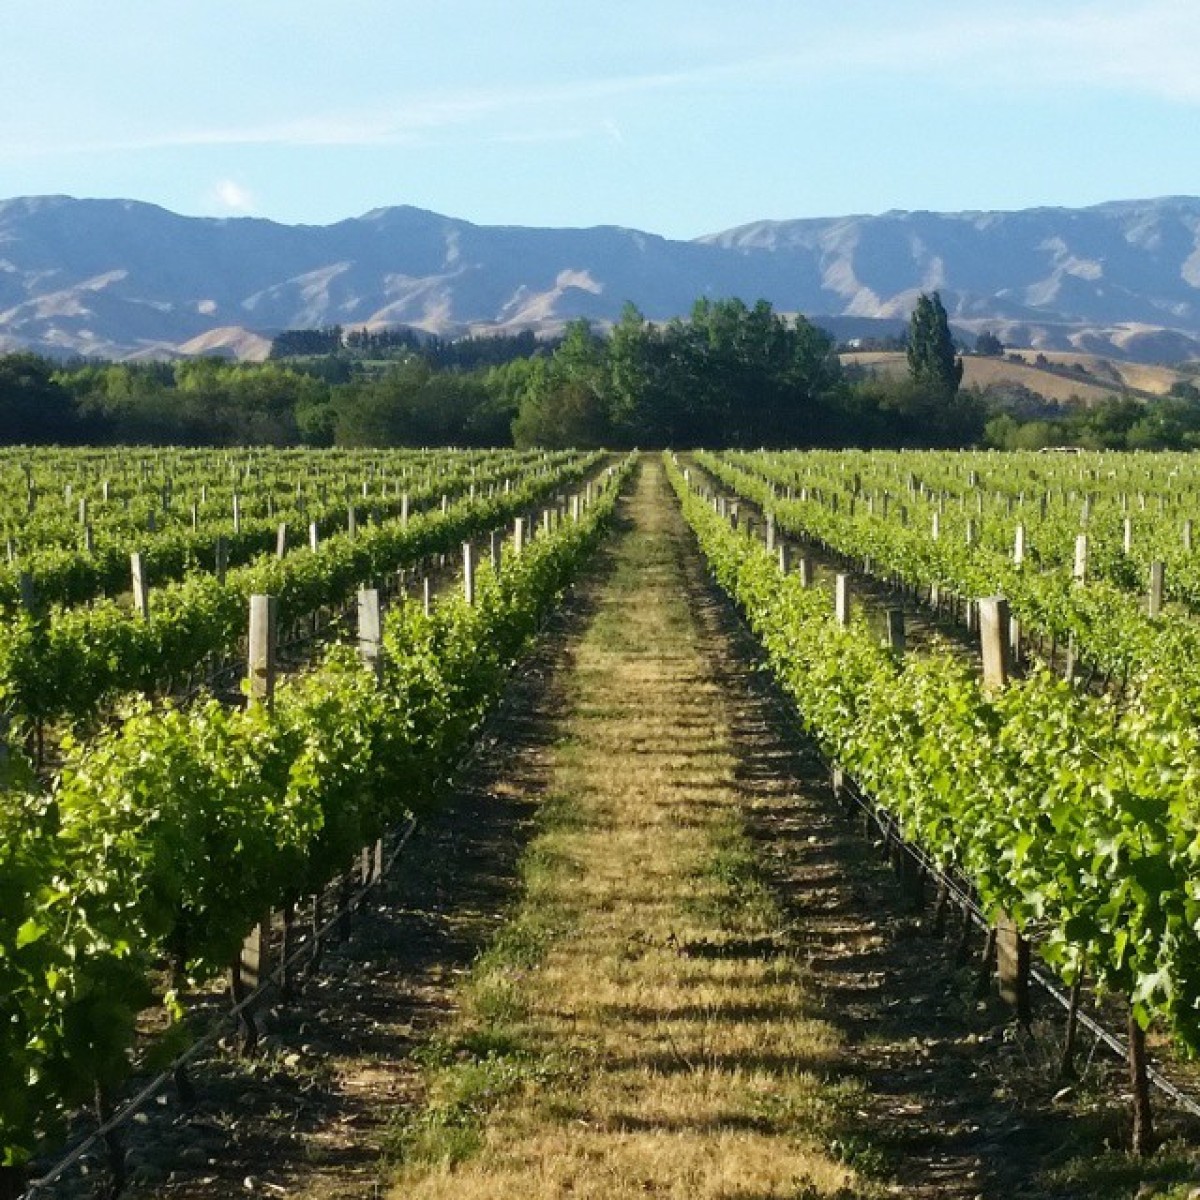 A stroll down vineyard lane